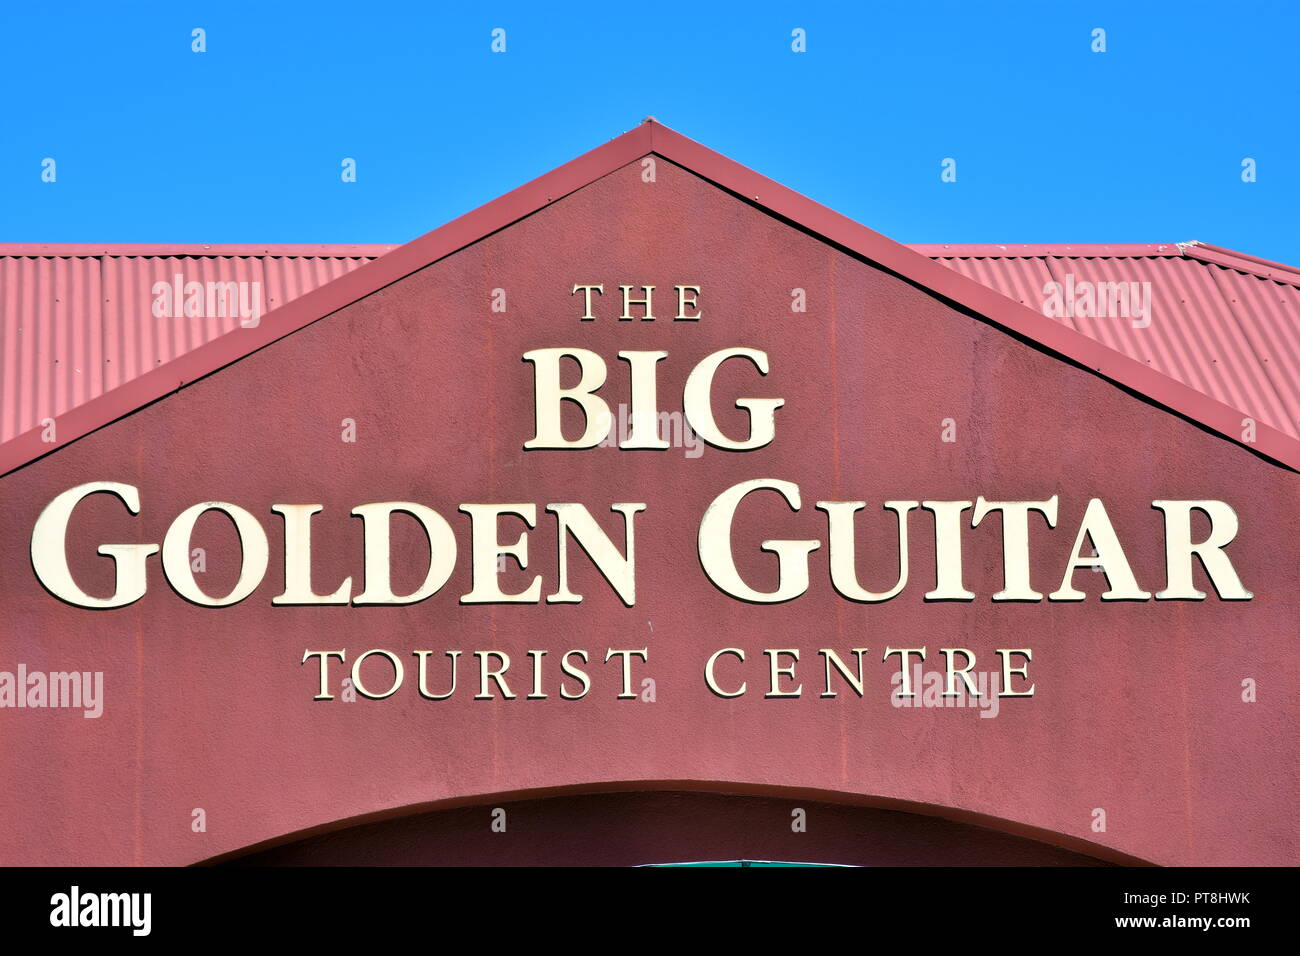 Big golden guitar. Stock Photo